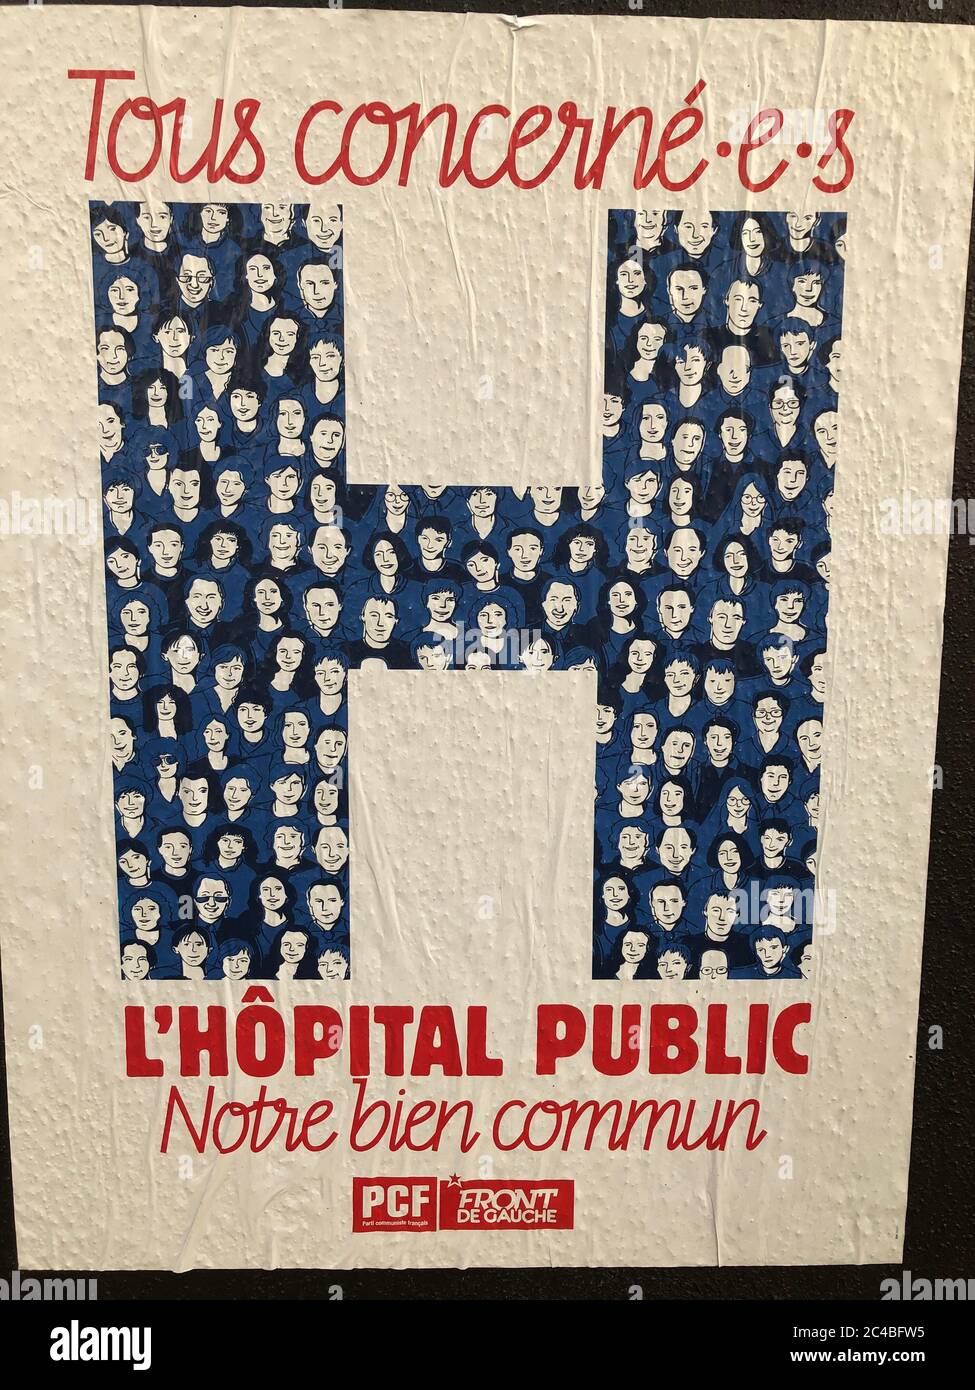 Hôpital H sur une affiche du PCF (Parti communiste français) rappelant que l'hôpital est un service public. Banque D'Images